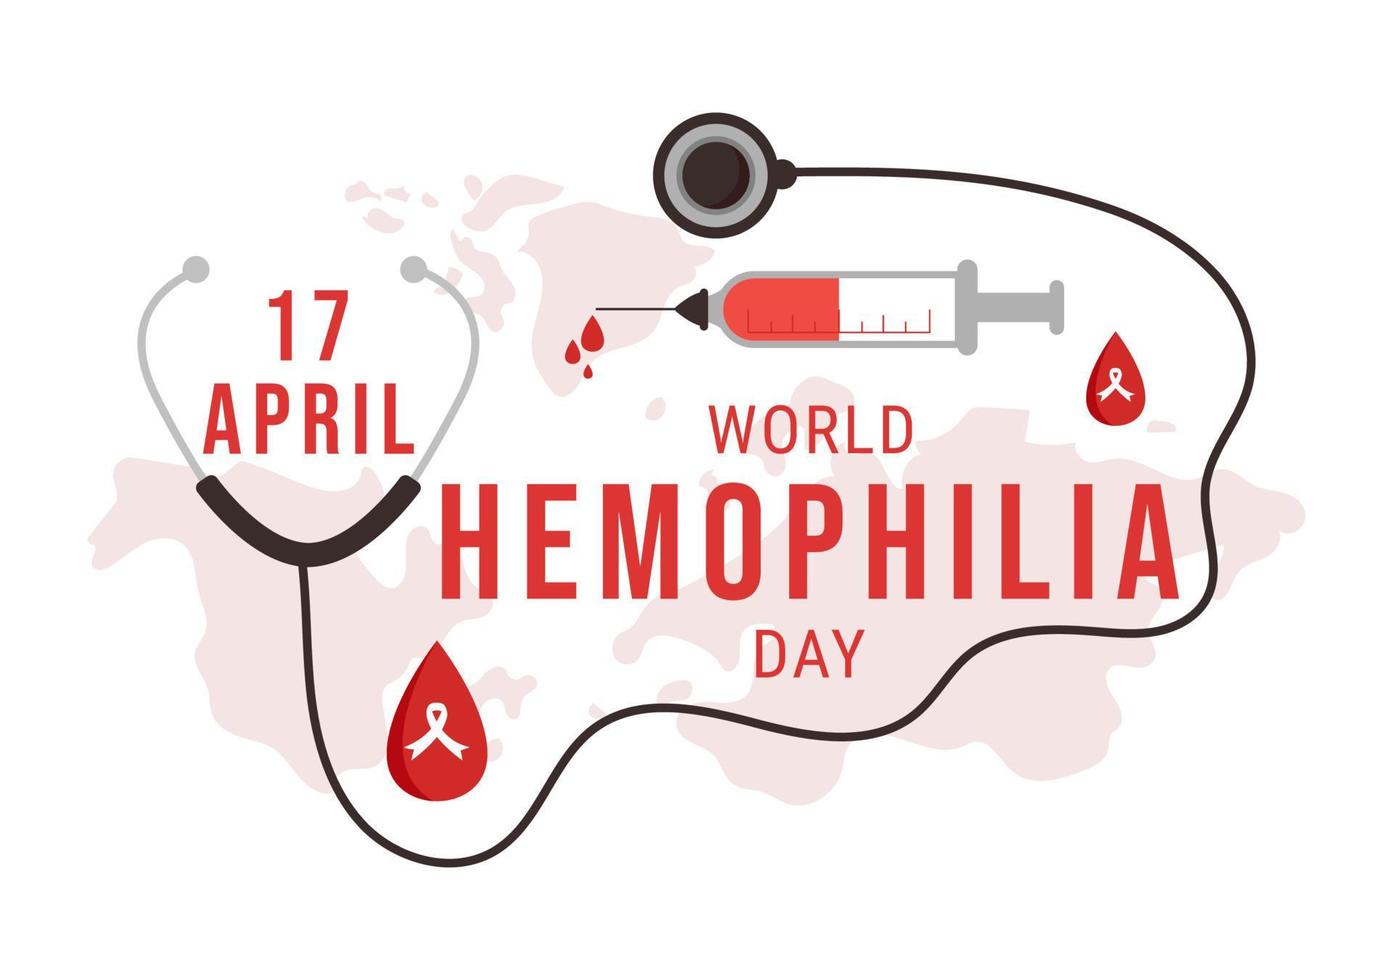 día mundial de la hemofilia el 17 de abril ilustración con sangre sangrante roja para banner web o página de inicio en plantillas planas dibujadas a mano de dibujos animados vector